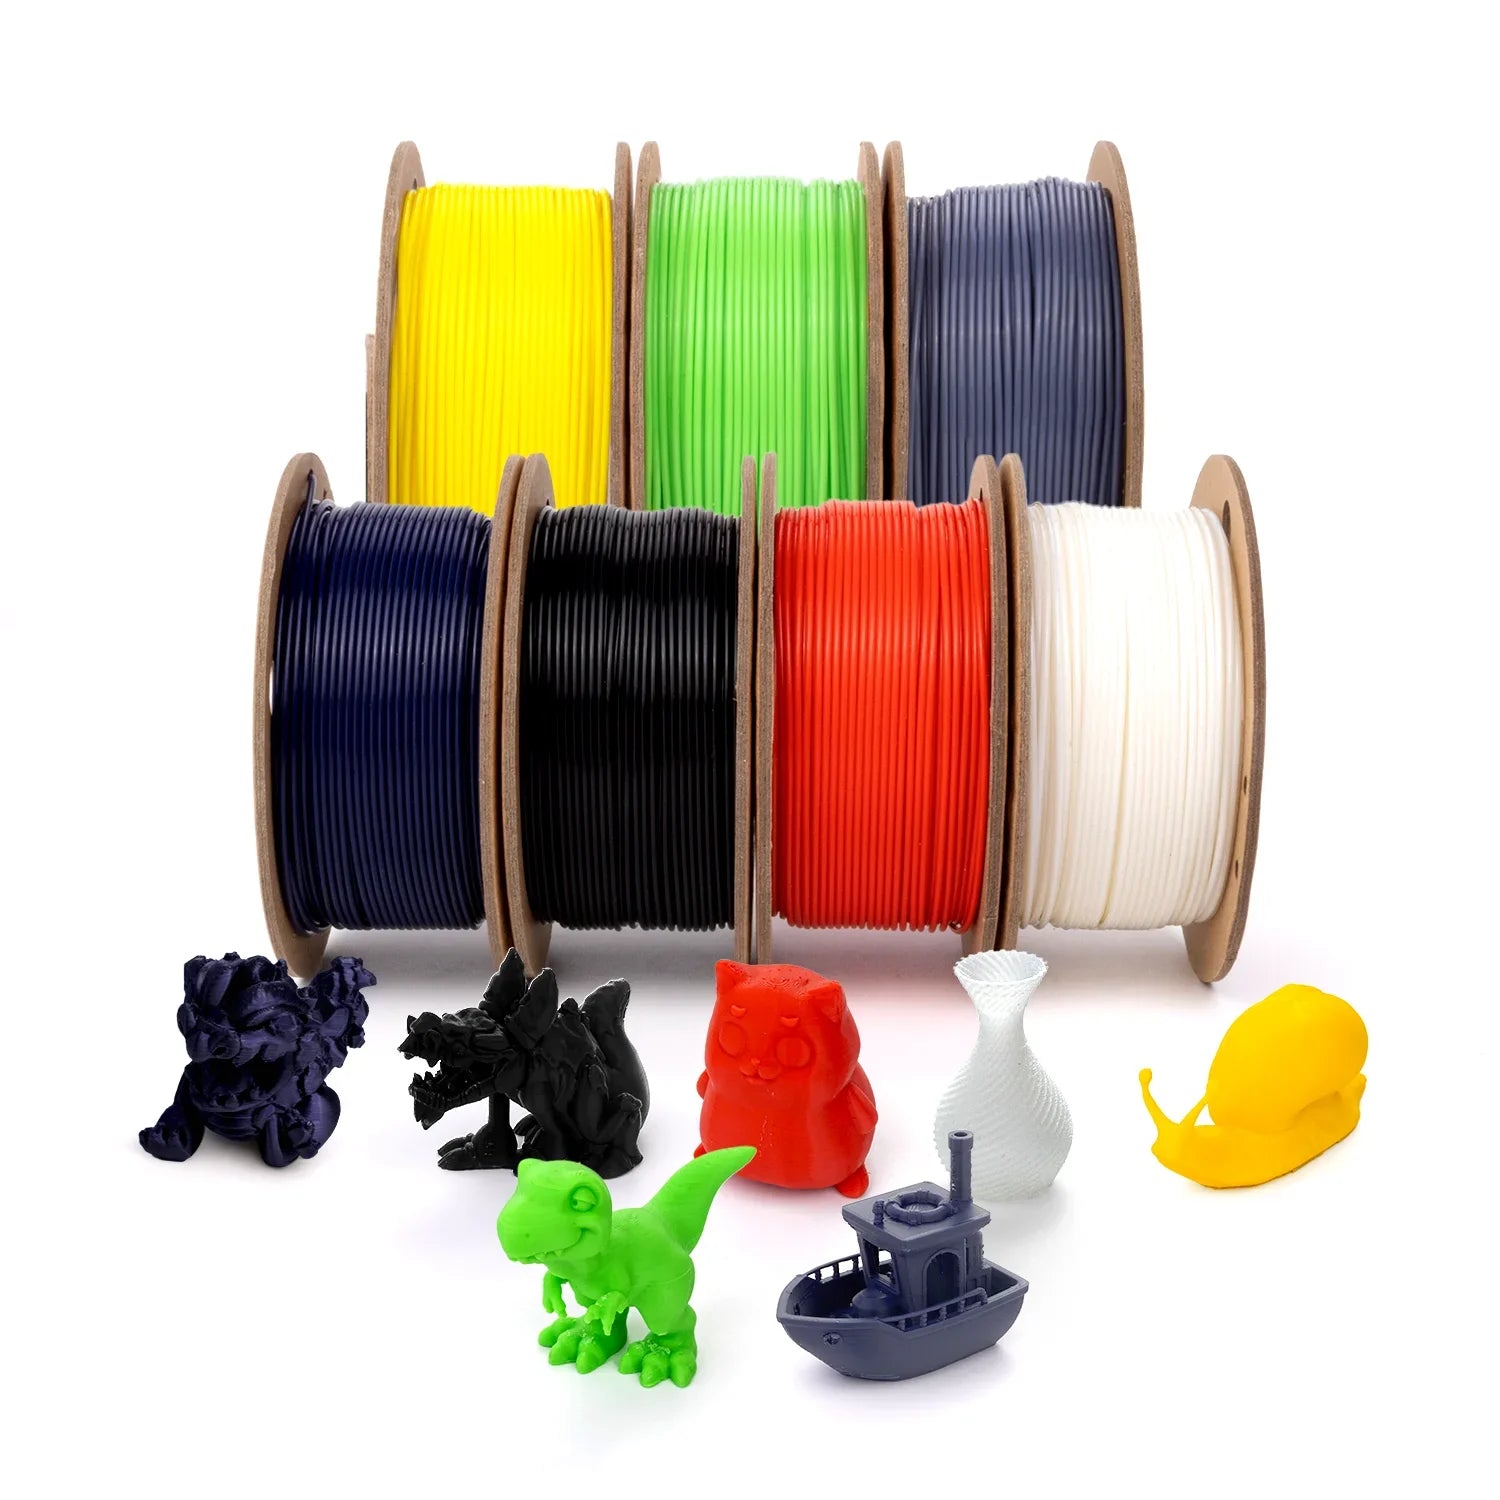 KOKONI All PLA+ Colors Filaments Pack, 7 units, net weight 2.128kg/1.47lb